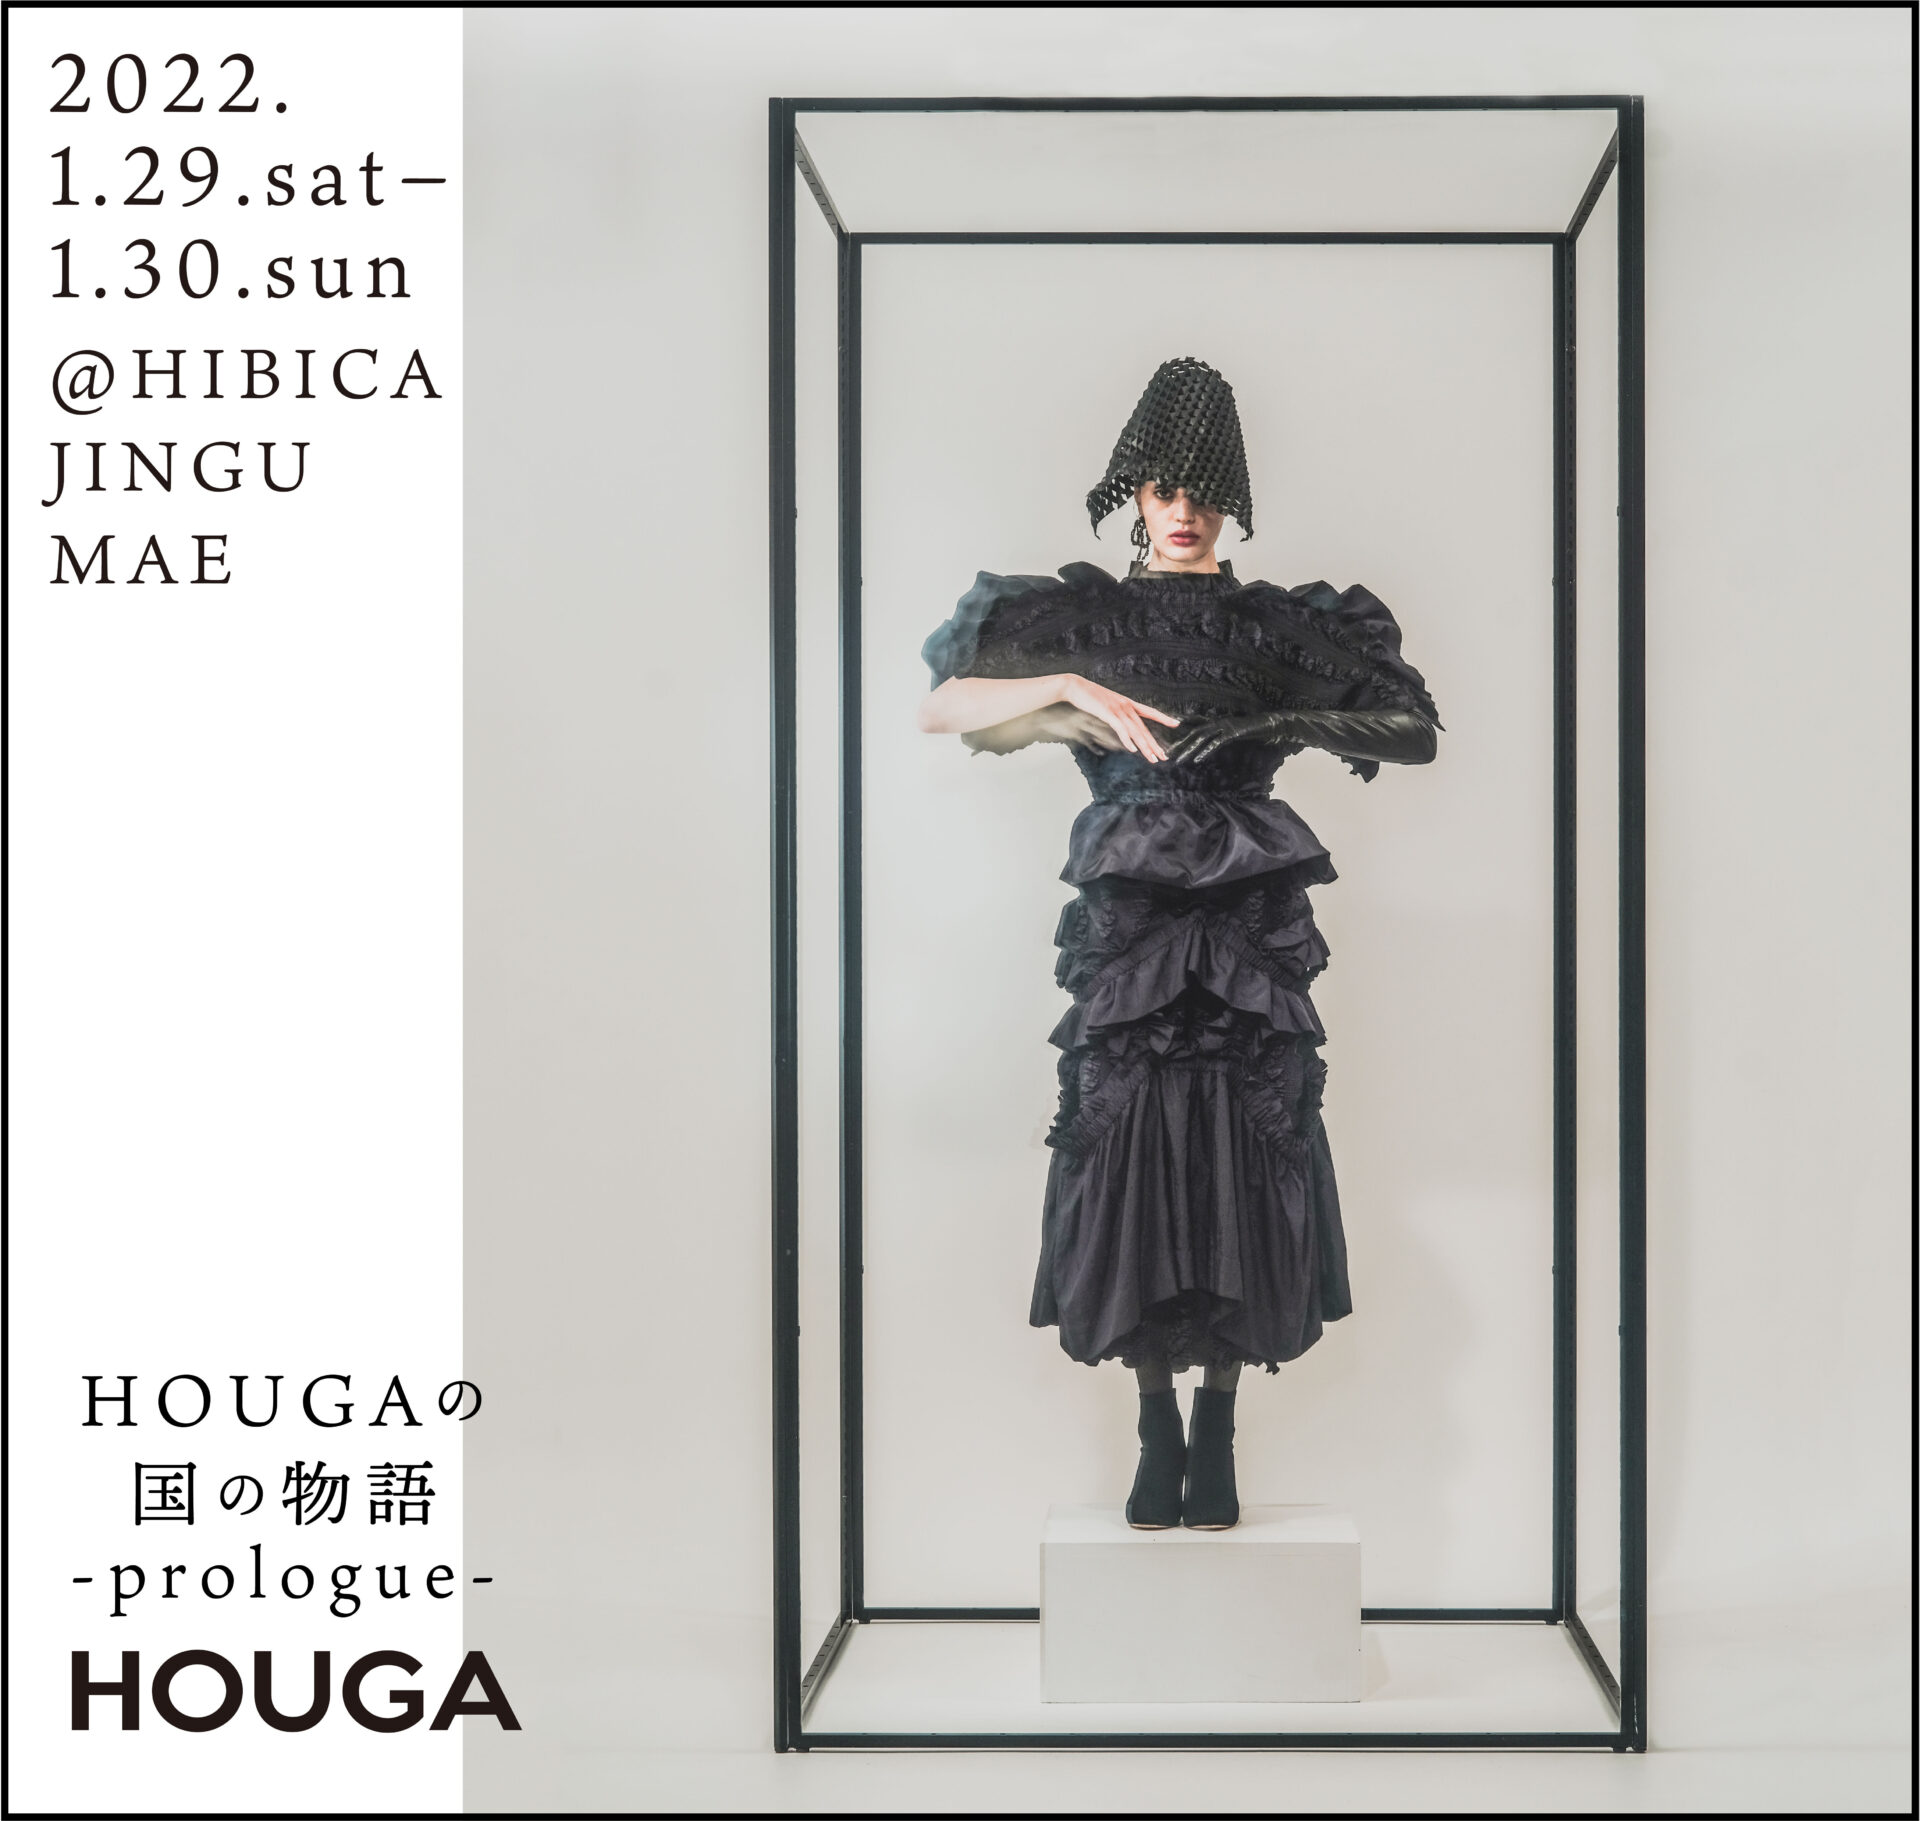 ドレスブランドのHOUGA（ホウガ）が2日間限定の企画展示「HOUGAの国の物語 -prologue-」を 原宿キャットストリートにあるギャラリーHIBICA神宮前にて開催